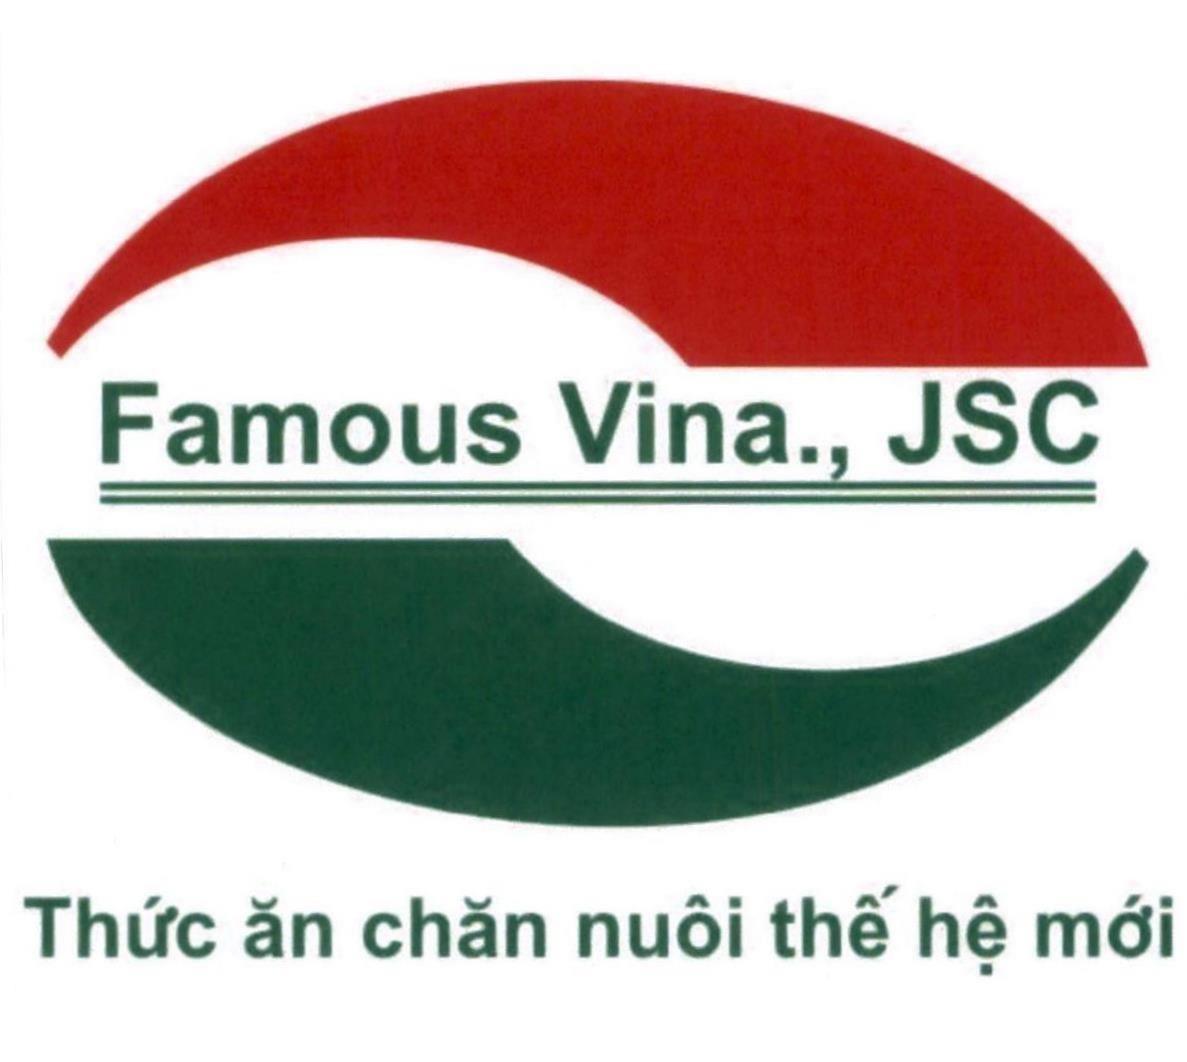 Famous Vina., JSC Thức ăn chăn nuôi thế hệ mới